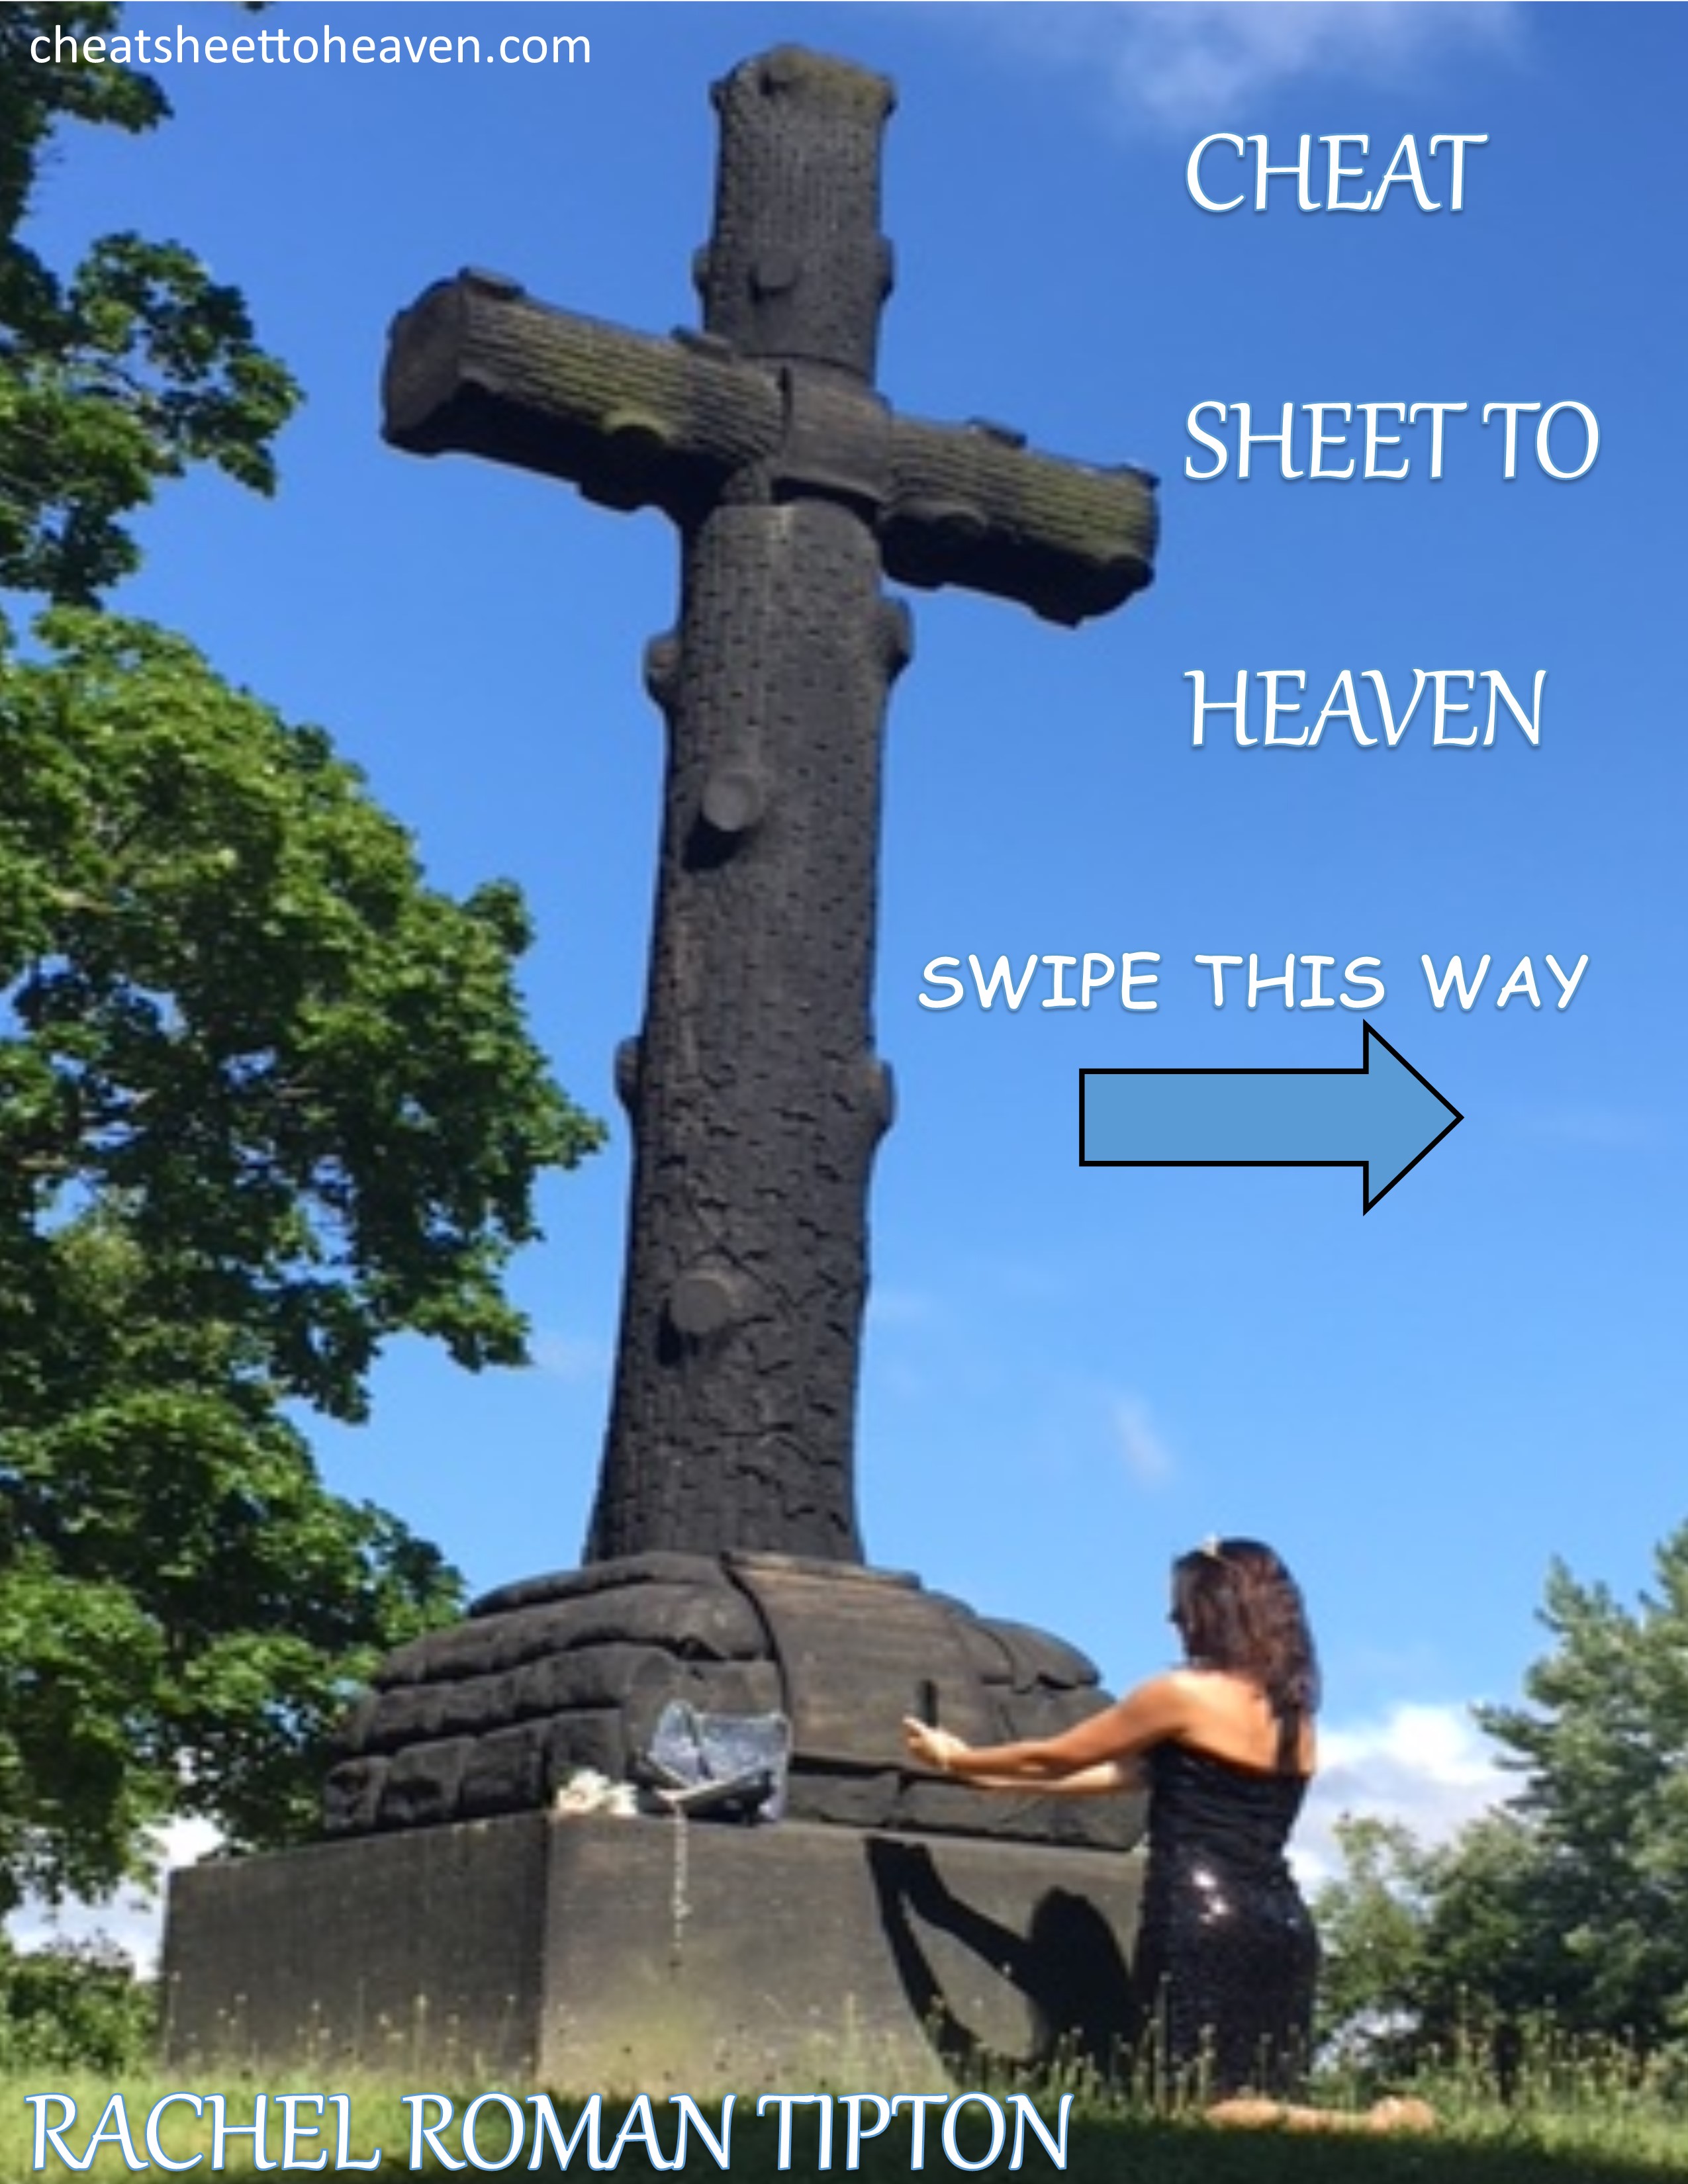 FREE: Cheat Sheet to Heaven by Rachel Roman Tipton